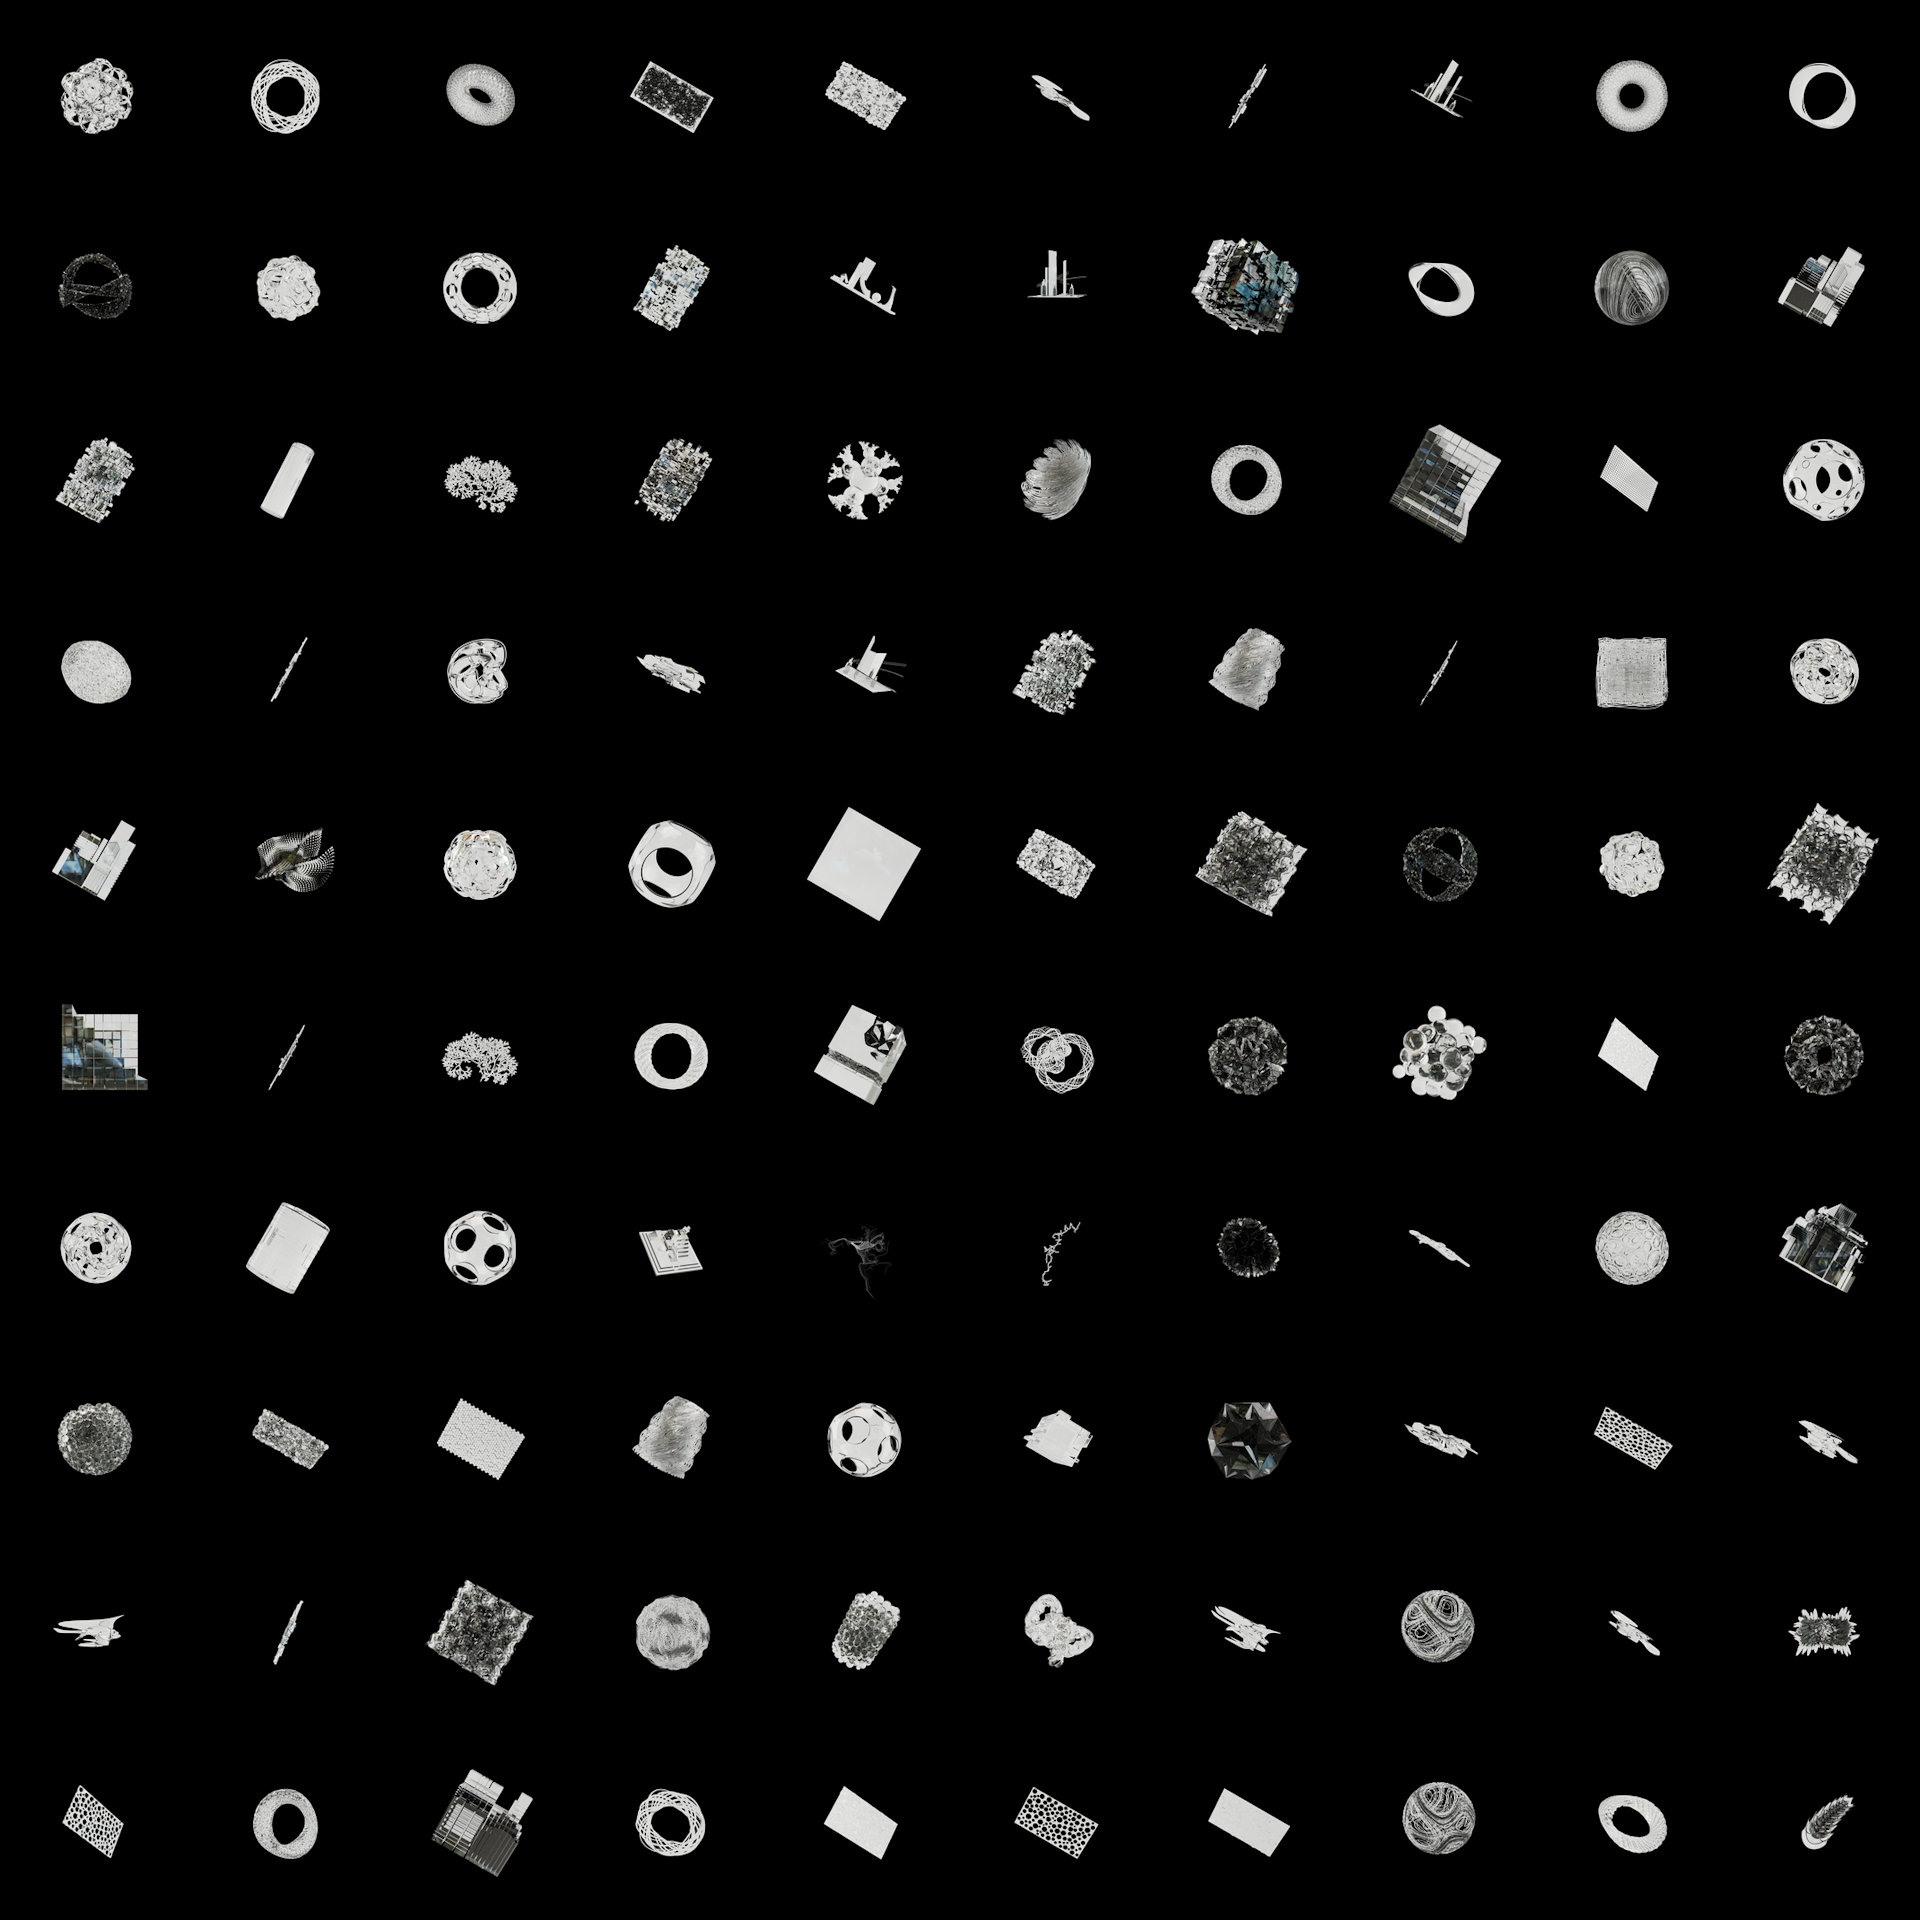 The Bundle - cmp.glass/99 tile image 1